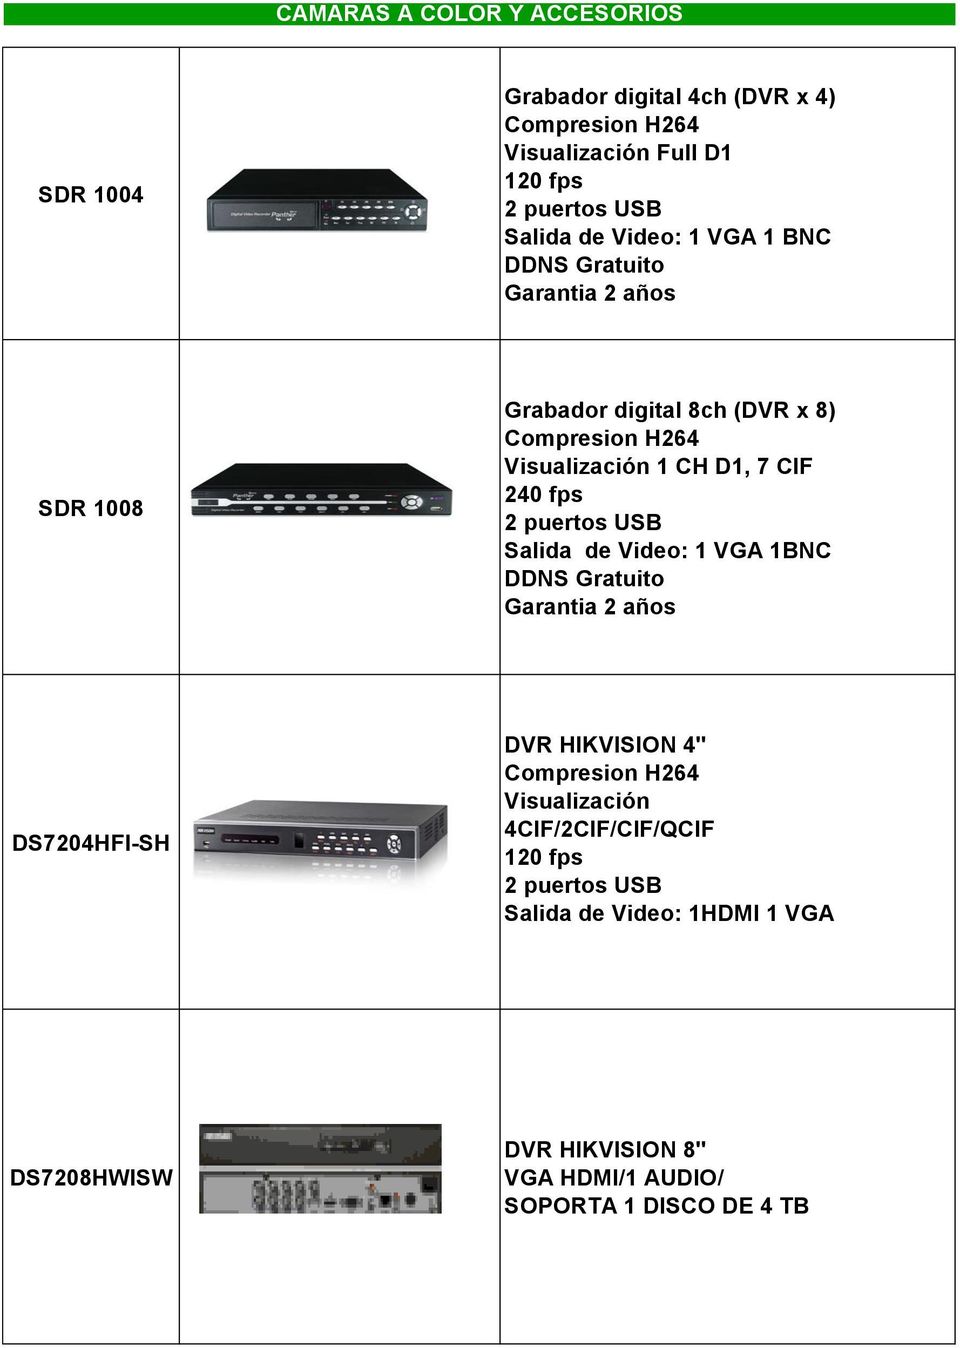 fps 2 puertos USB Salida de Video: 1 VGA 1BNC DDNS Gratuito Garantia 2 años DS7204HFI-SH DVR HIKVISION 4" Compresion H264 Visualización